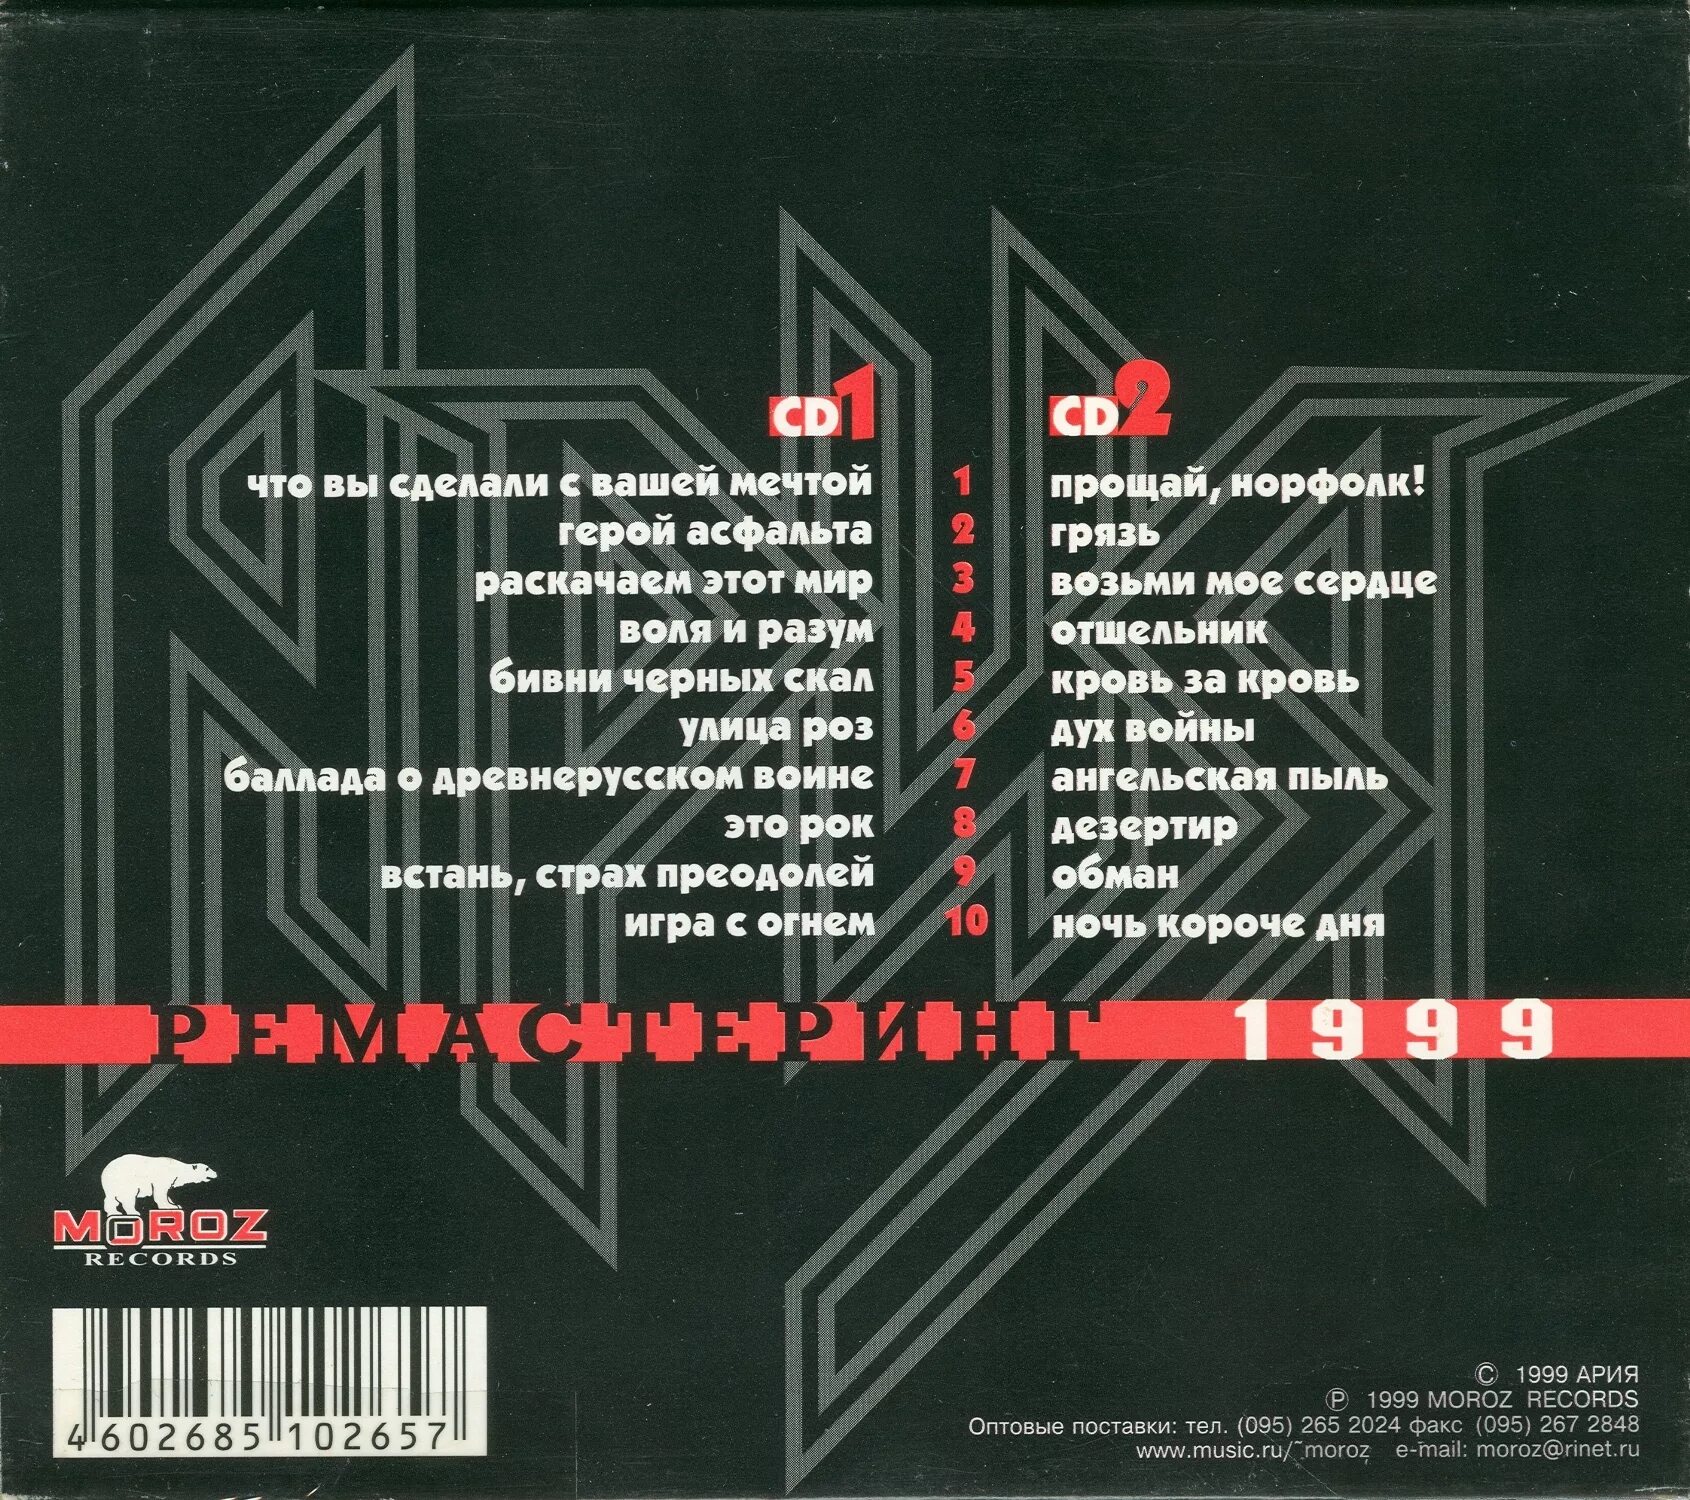 Музыка ария песни. Ария. Ария лучшие песни 1999. Группа Ария 1999. Сборники 1999 года русские.